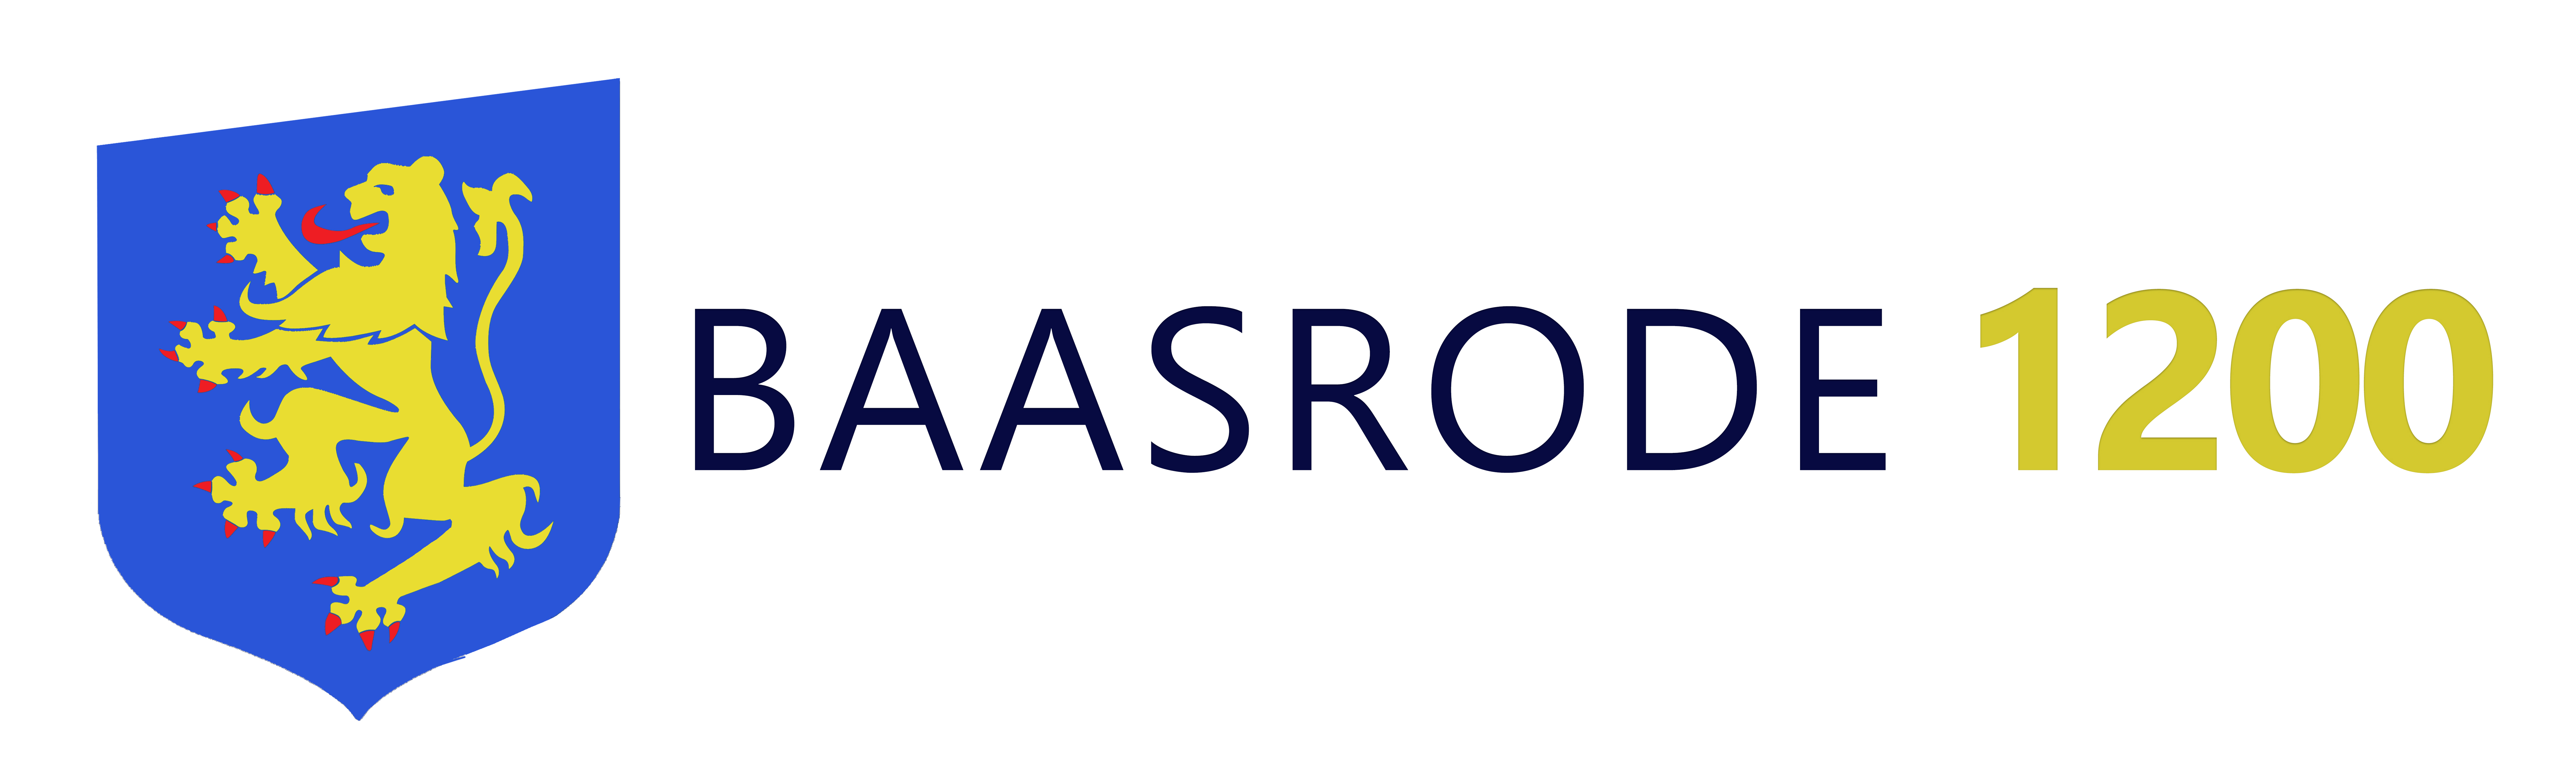 Logo Baasrode 1200